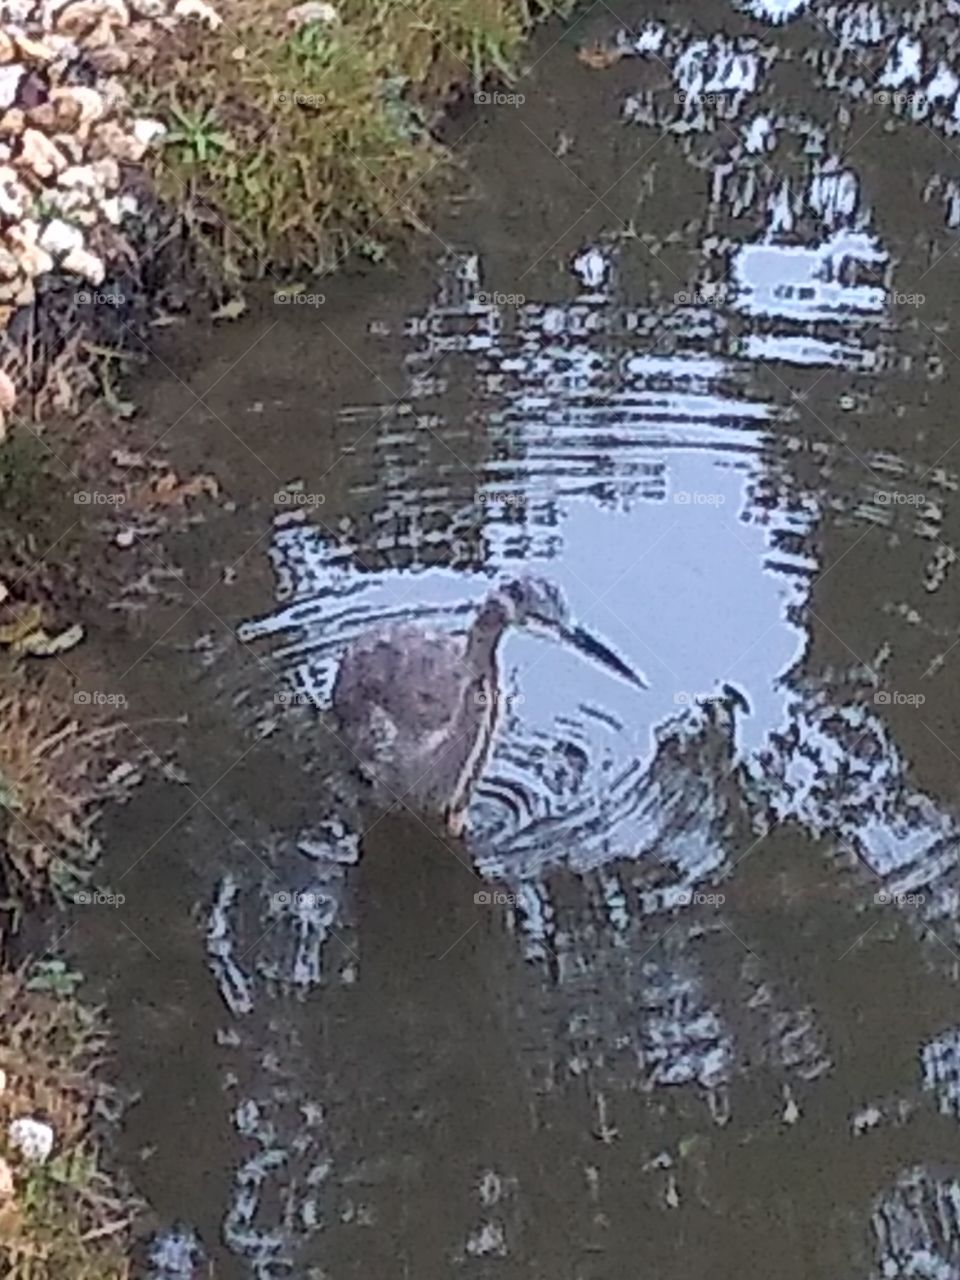 Crane feeding in local pond